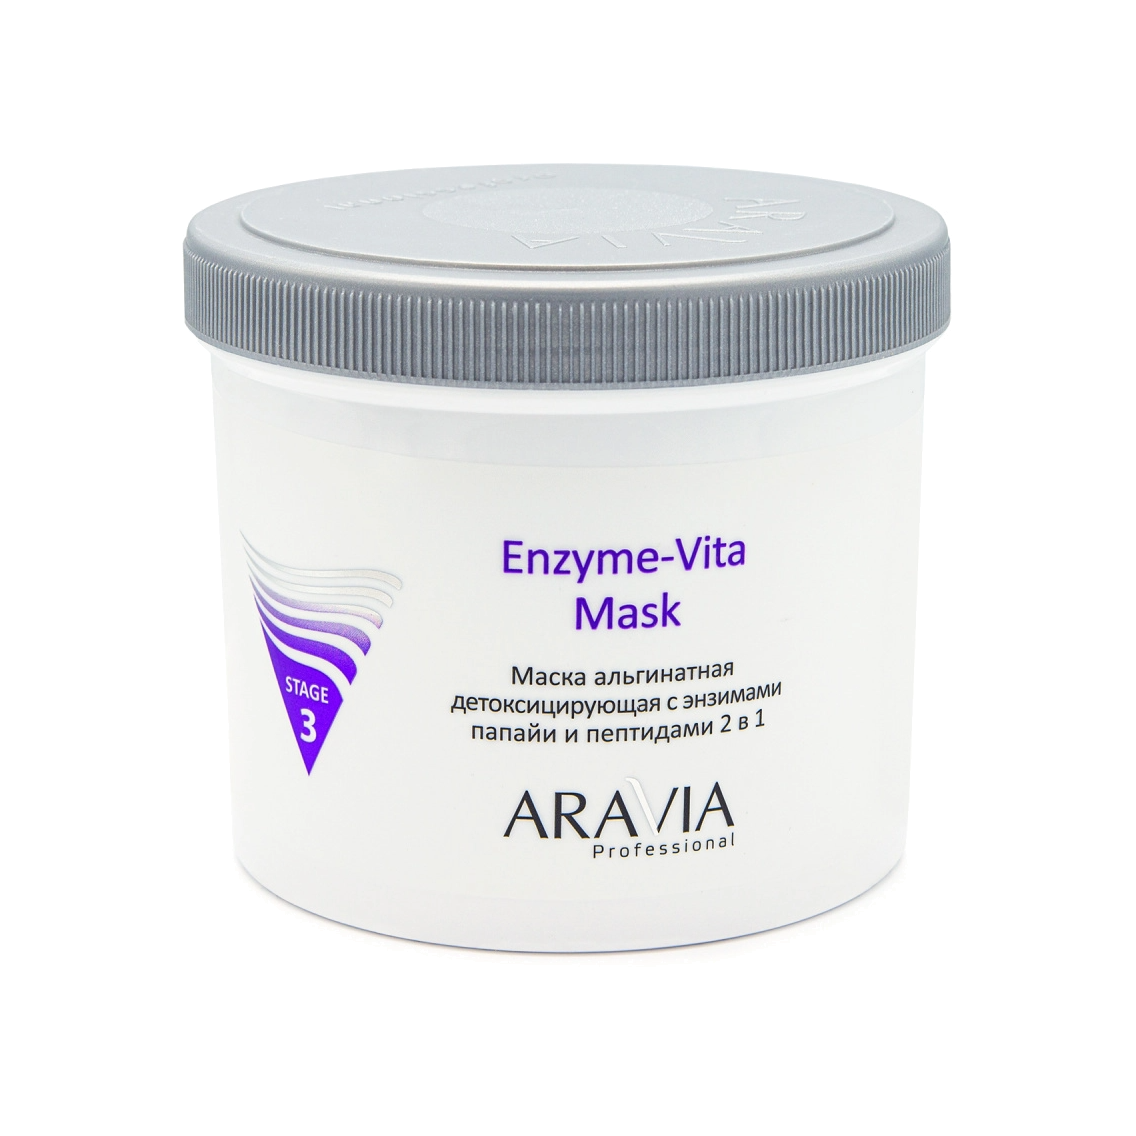 Маска альгинатная детоксицирующая с энзимами папайи и пептидами 2 в 1 Enzyme-Vita Mask купить в VISAGEHALL